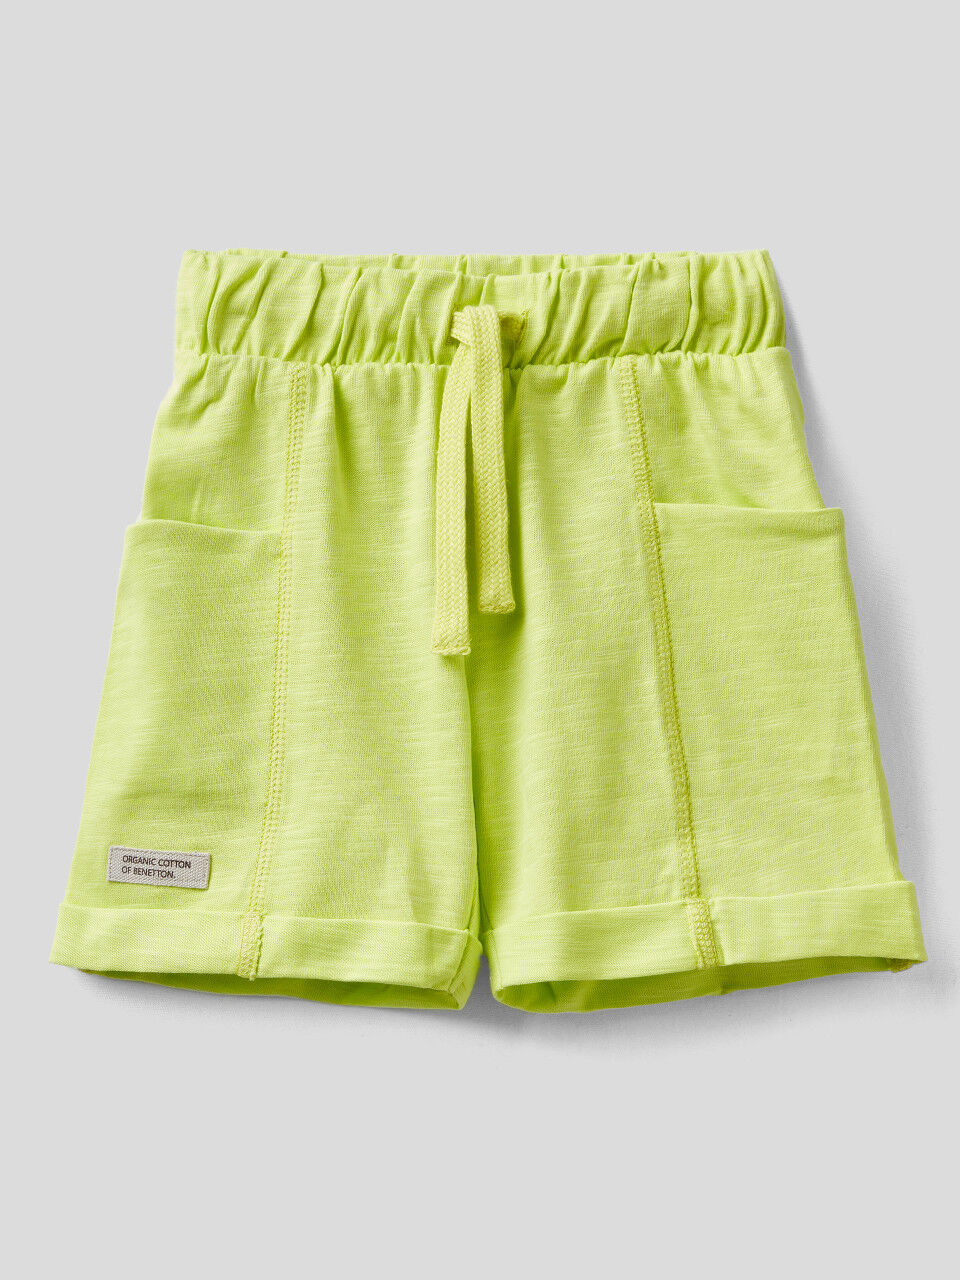 United Colors of Benetton Pantalones Cortos para niños y jóvenes 